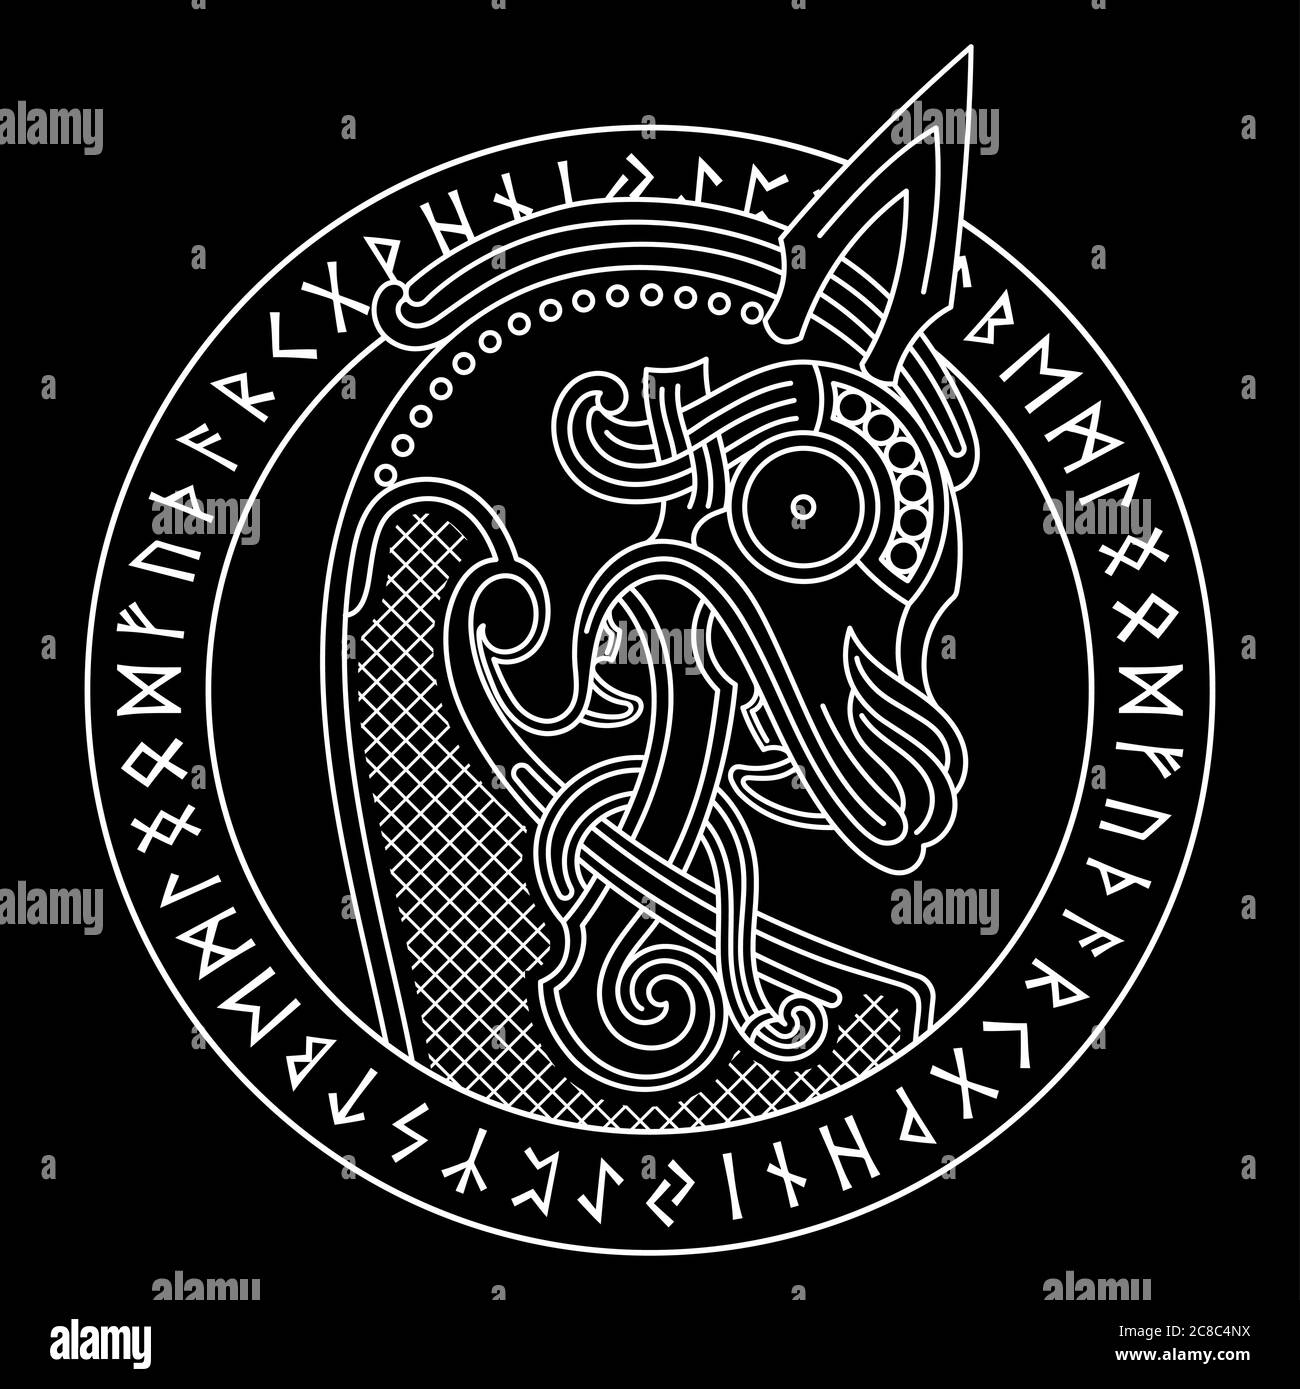 Design scandinave. La figure nasale du bateau viking Drakkar sous forme de dragone et de cercle runique Illustration de Vecteur